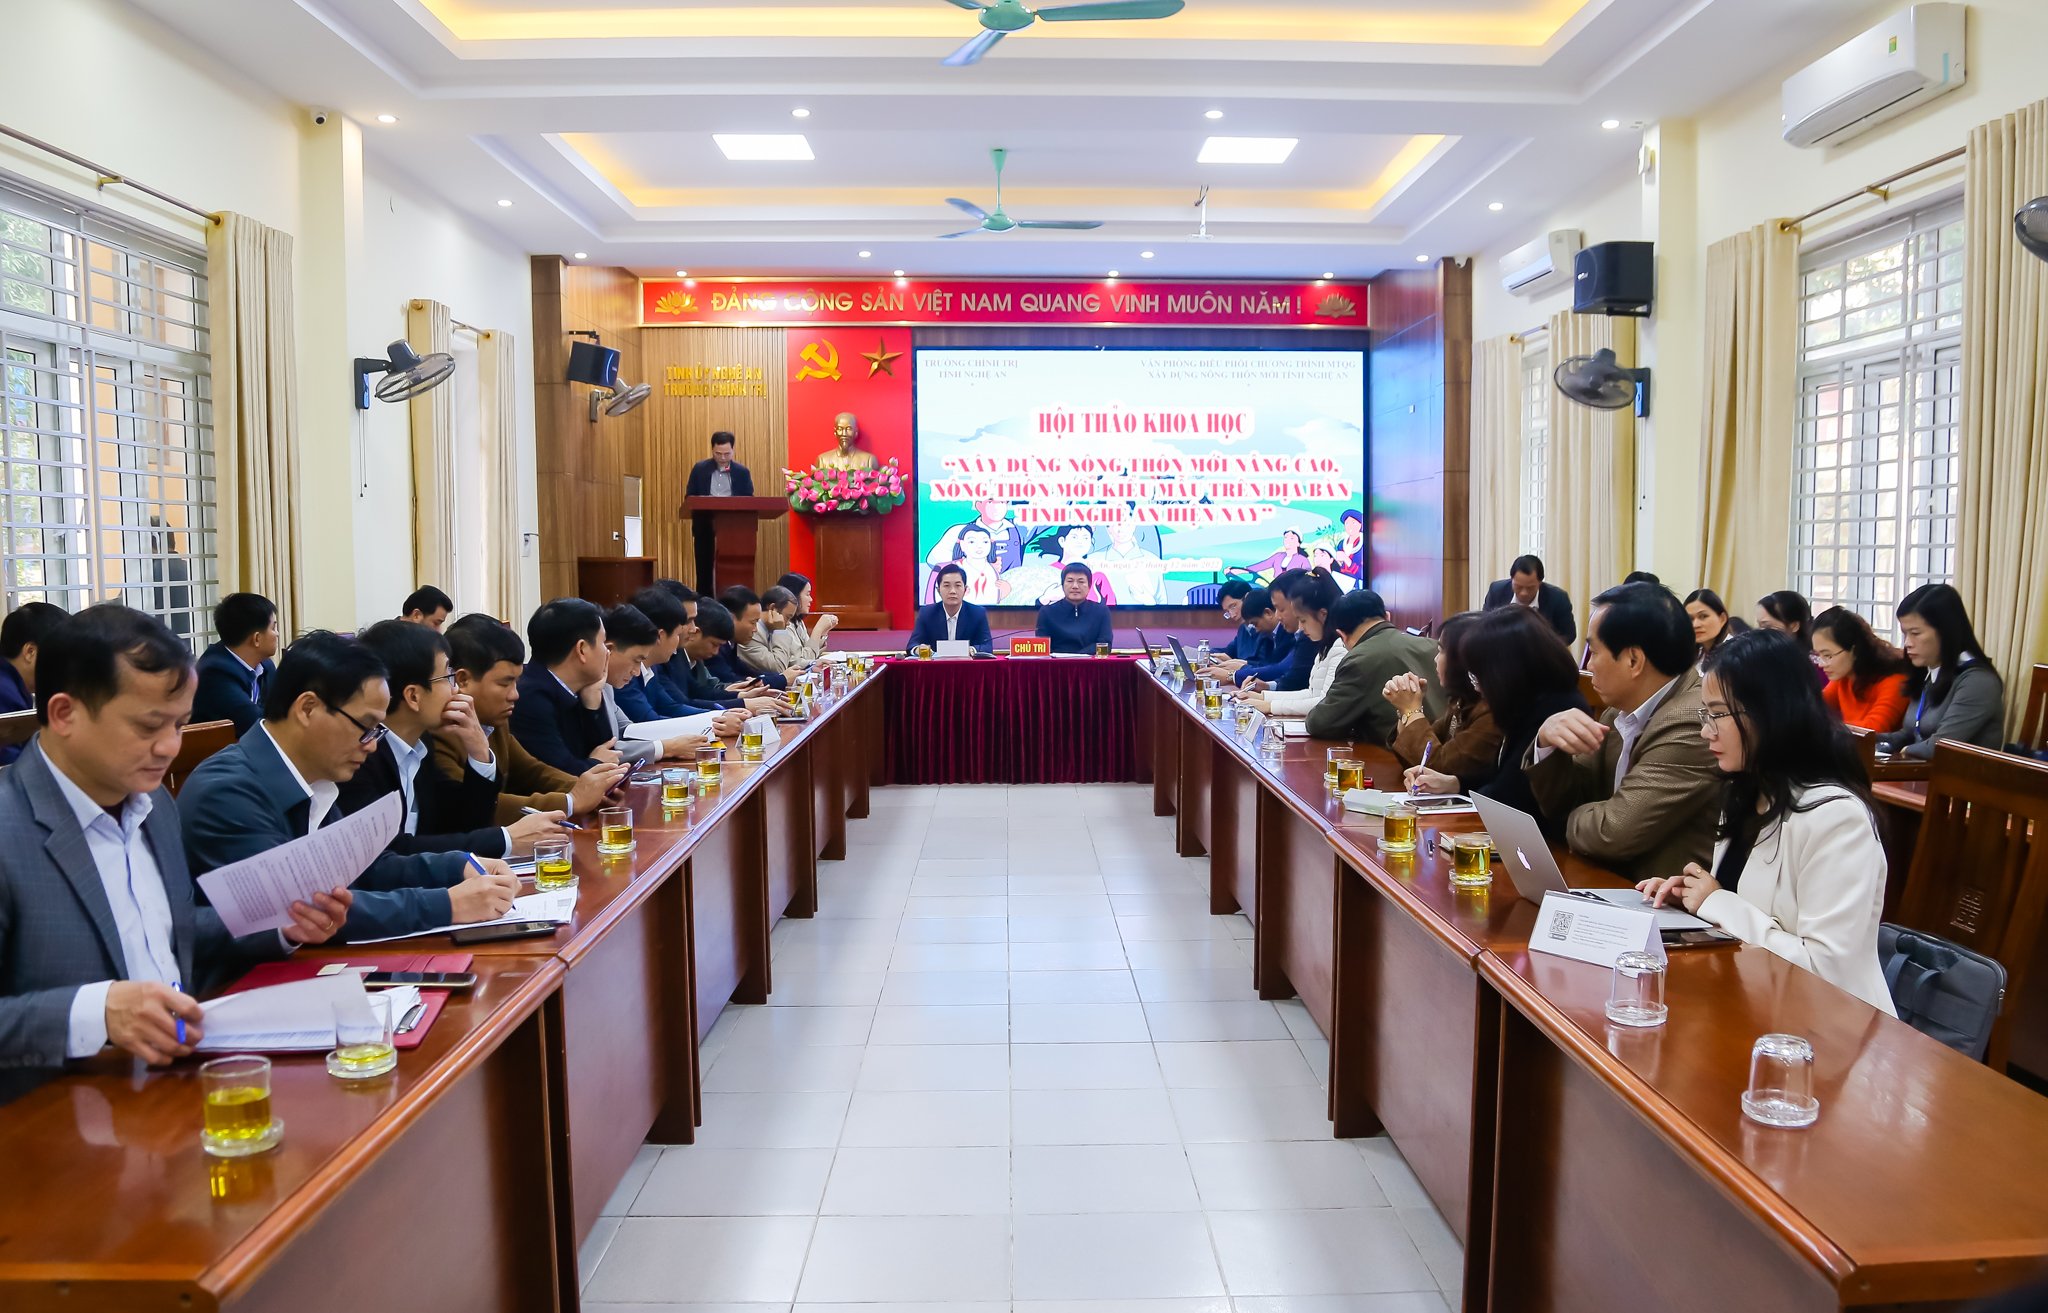 Hội thảo khoa học: “Xây dựng nông thôn mới nâng cao, nông thôn mới kiểu mẫu trên địa bàn tỉnh Nghệ An hiện nay”